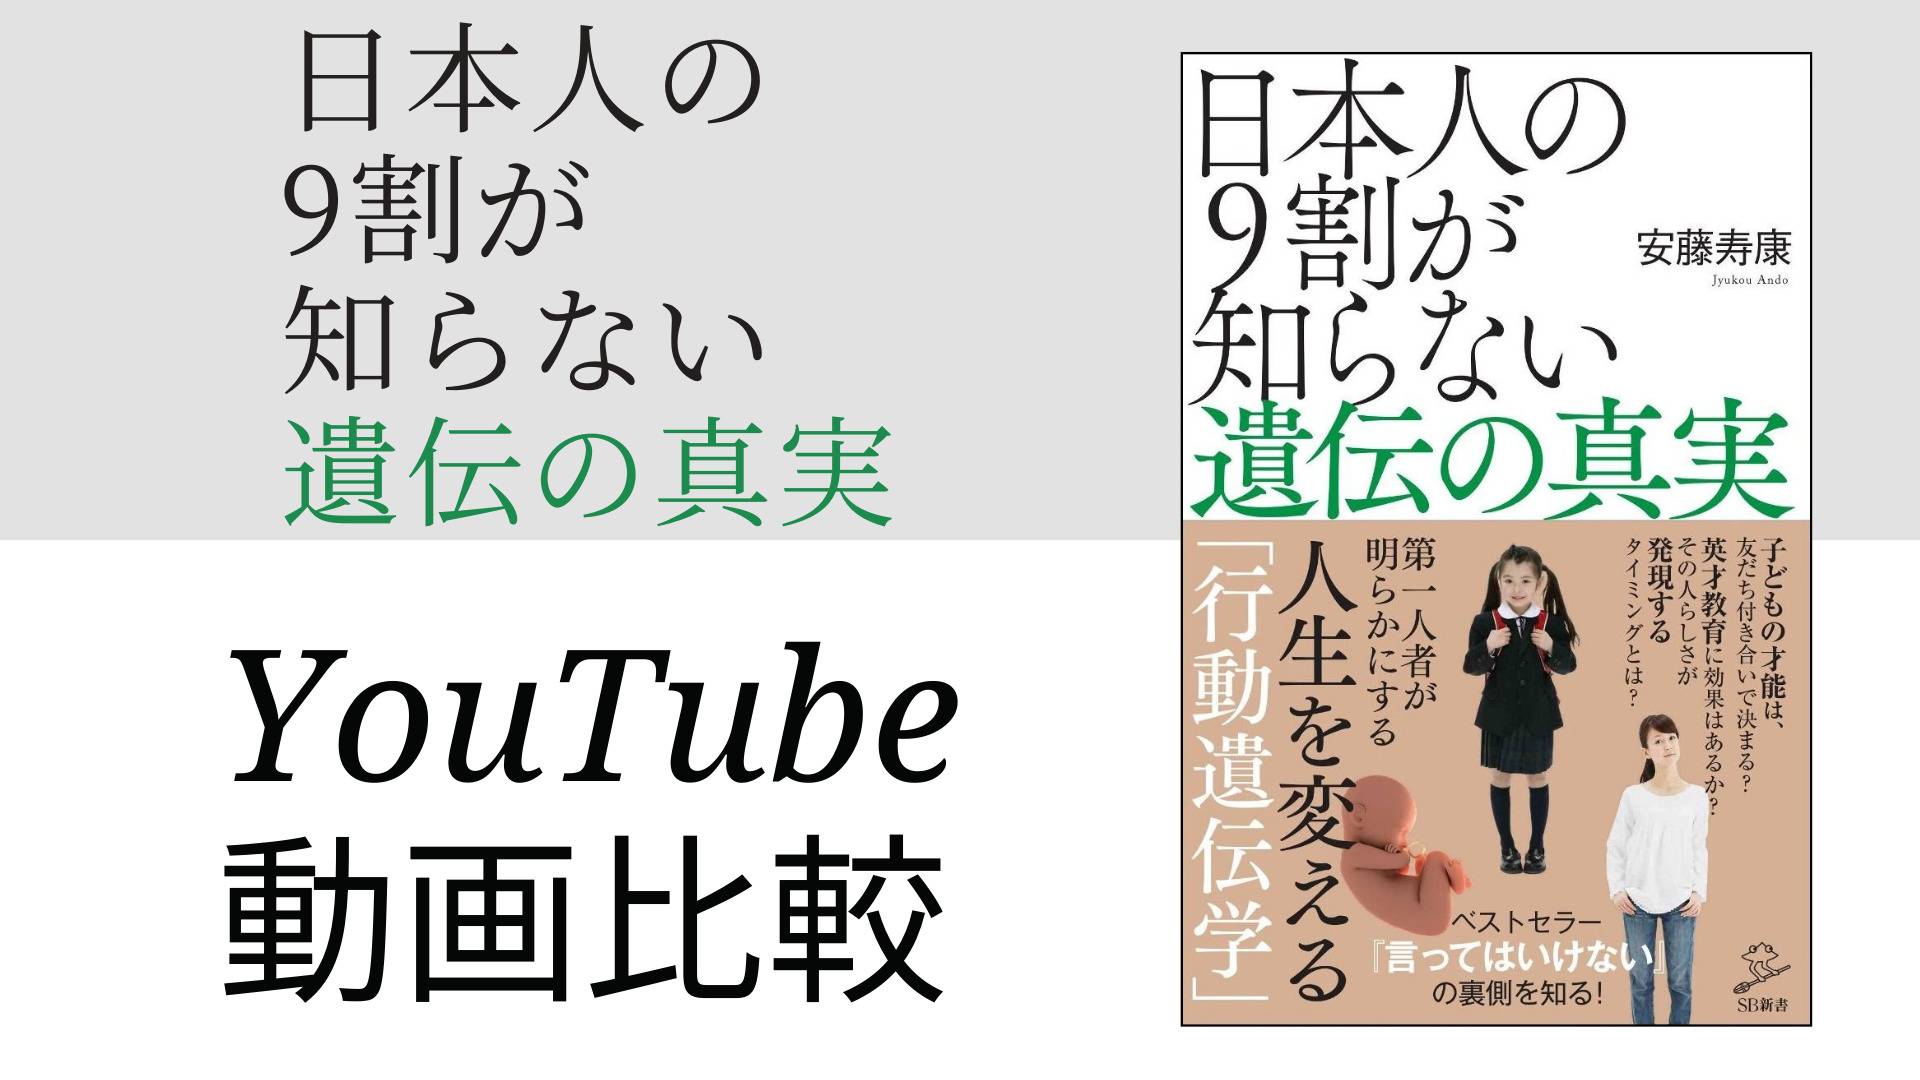 日本人の9割が知らない遺伝の真実 YouTube動画比較